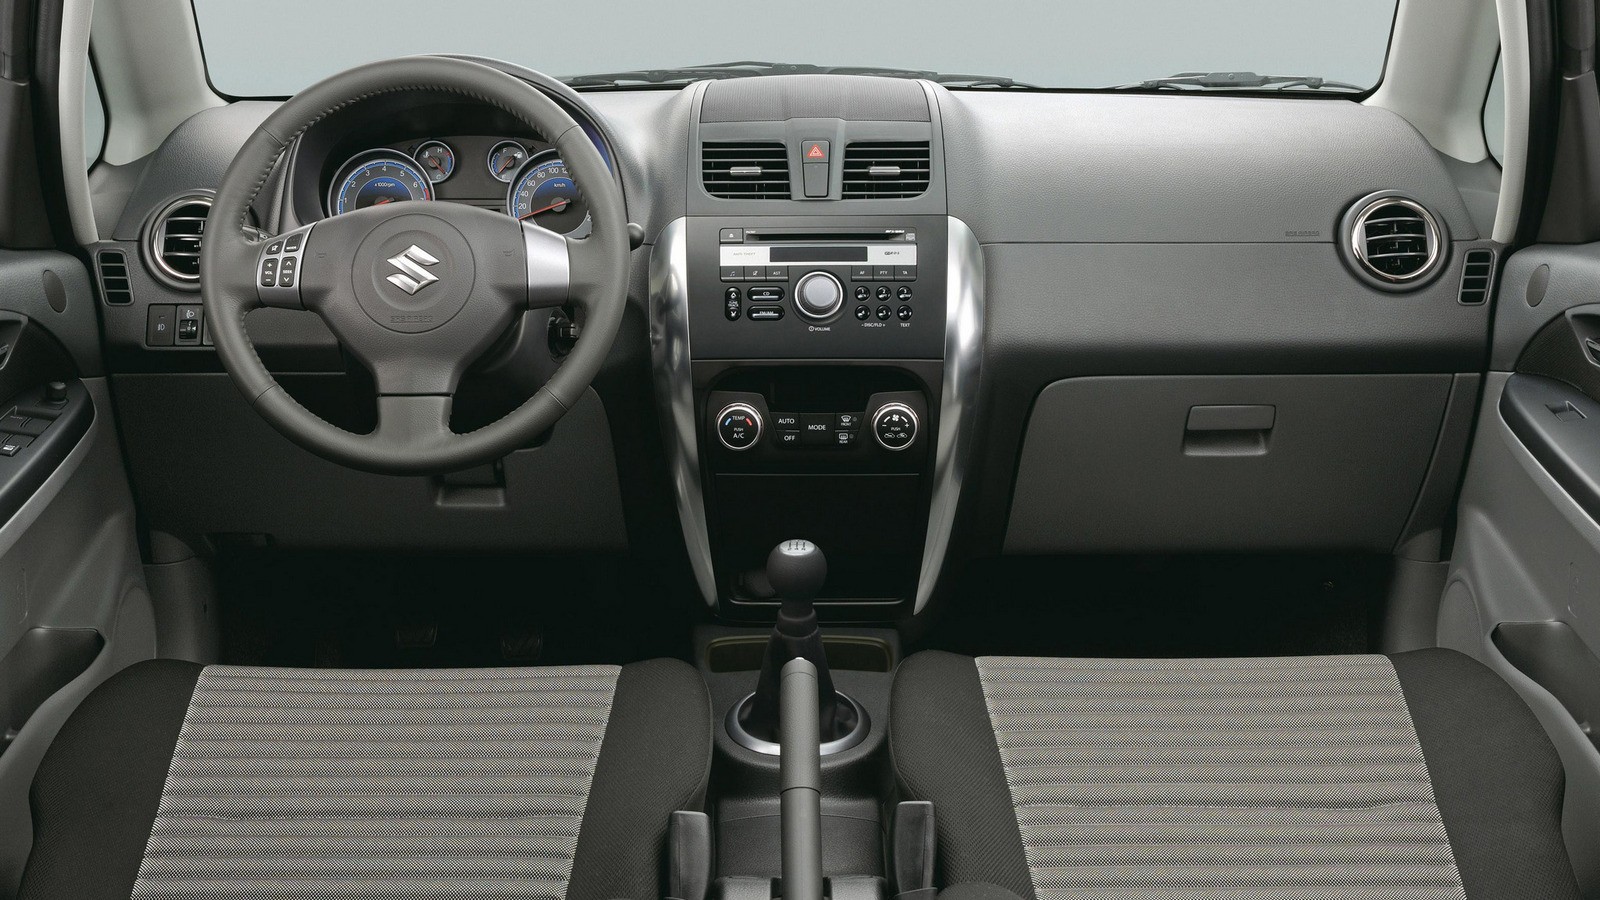 Какой тип усилителя руля устанавливается на Suzuki SX4?